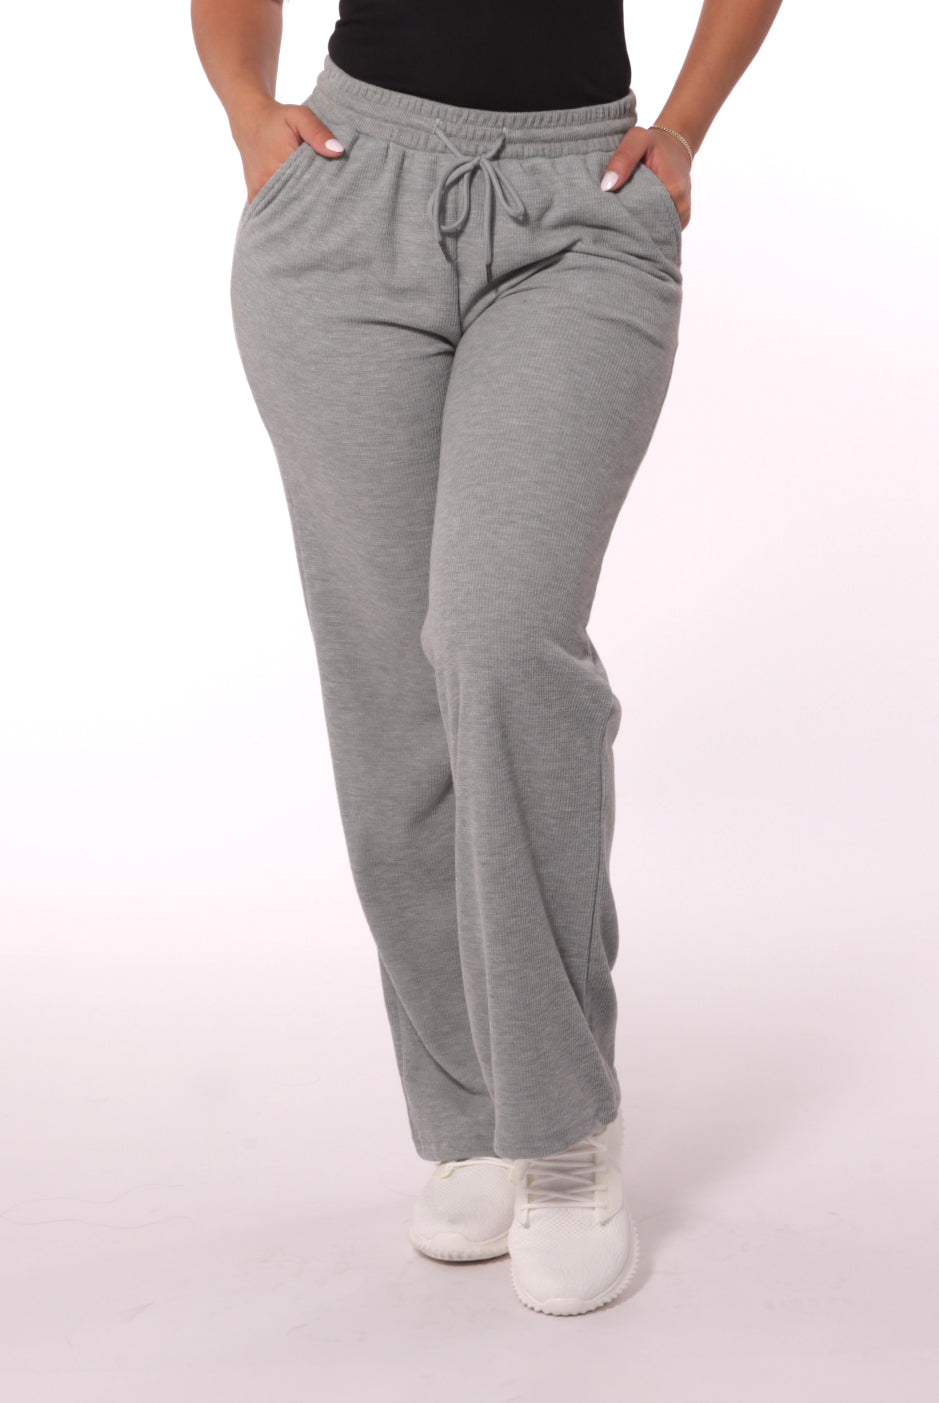 Women's Fleece Lined Pants With Pockets Straight Leg Trousers Winter  Comfort Sweatpants Loungewear